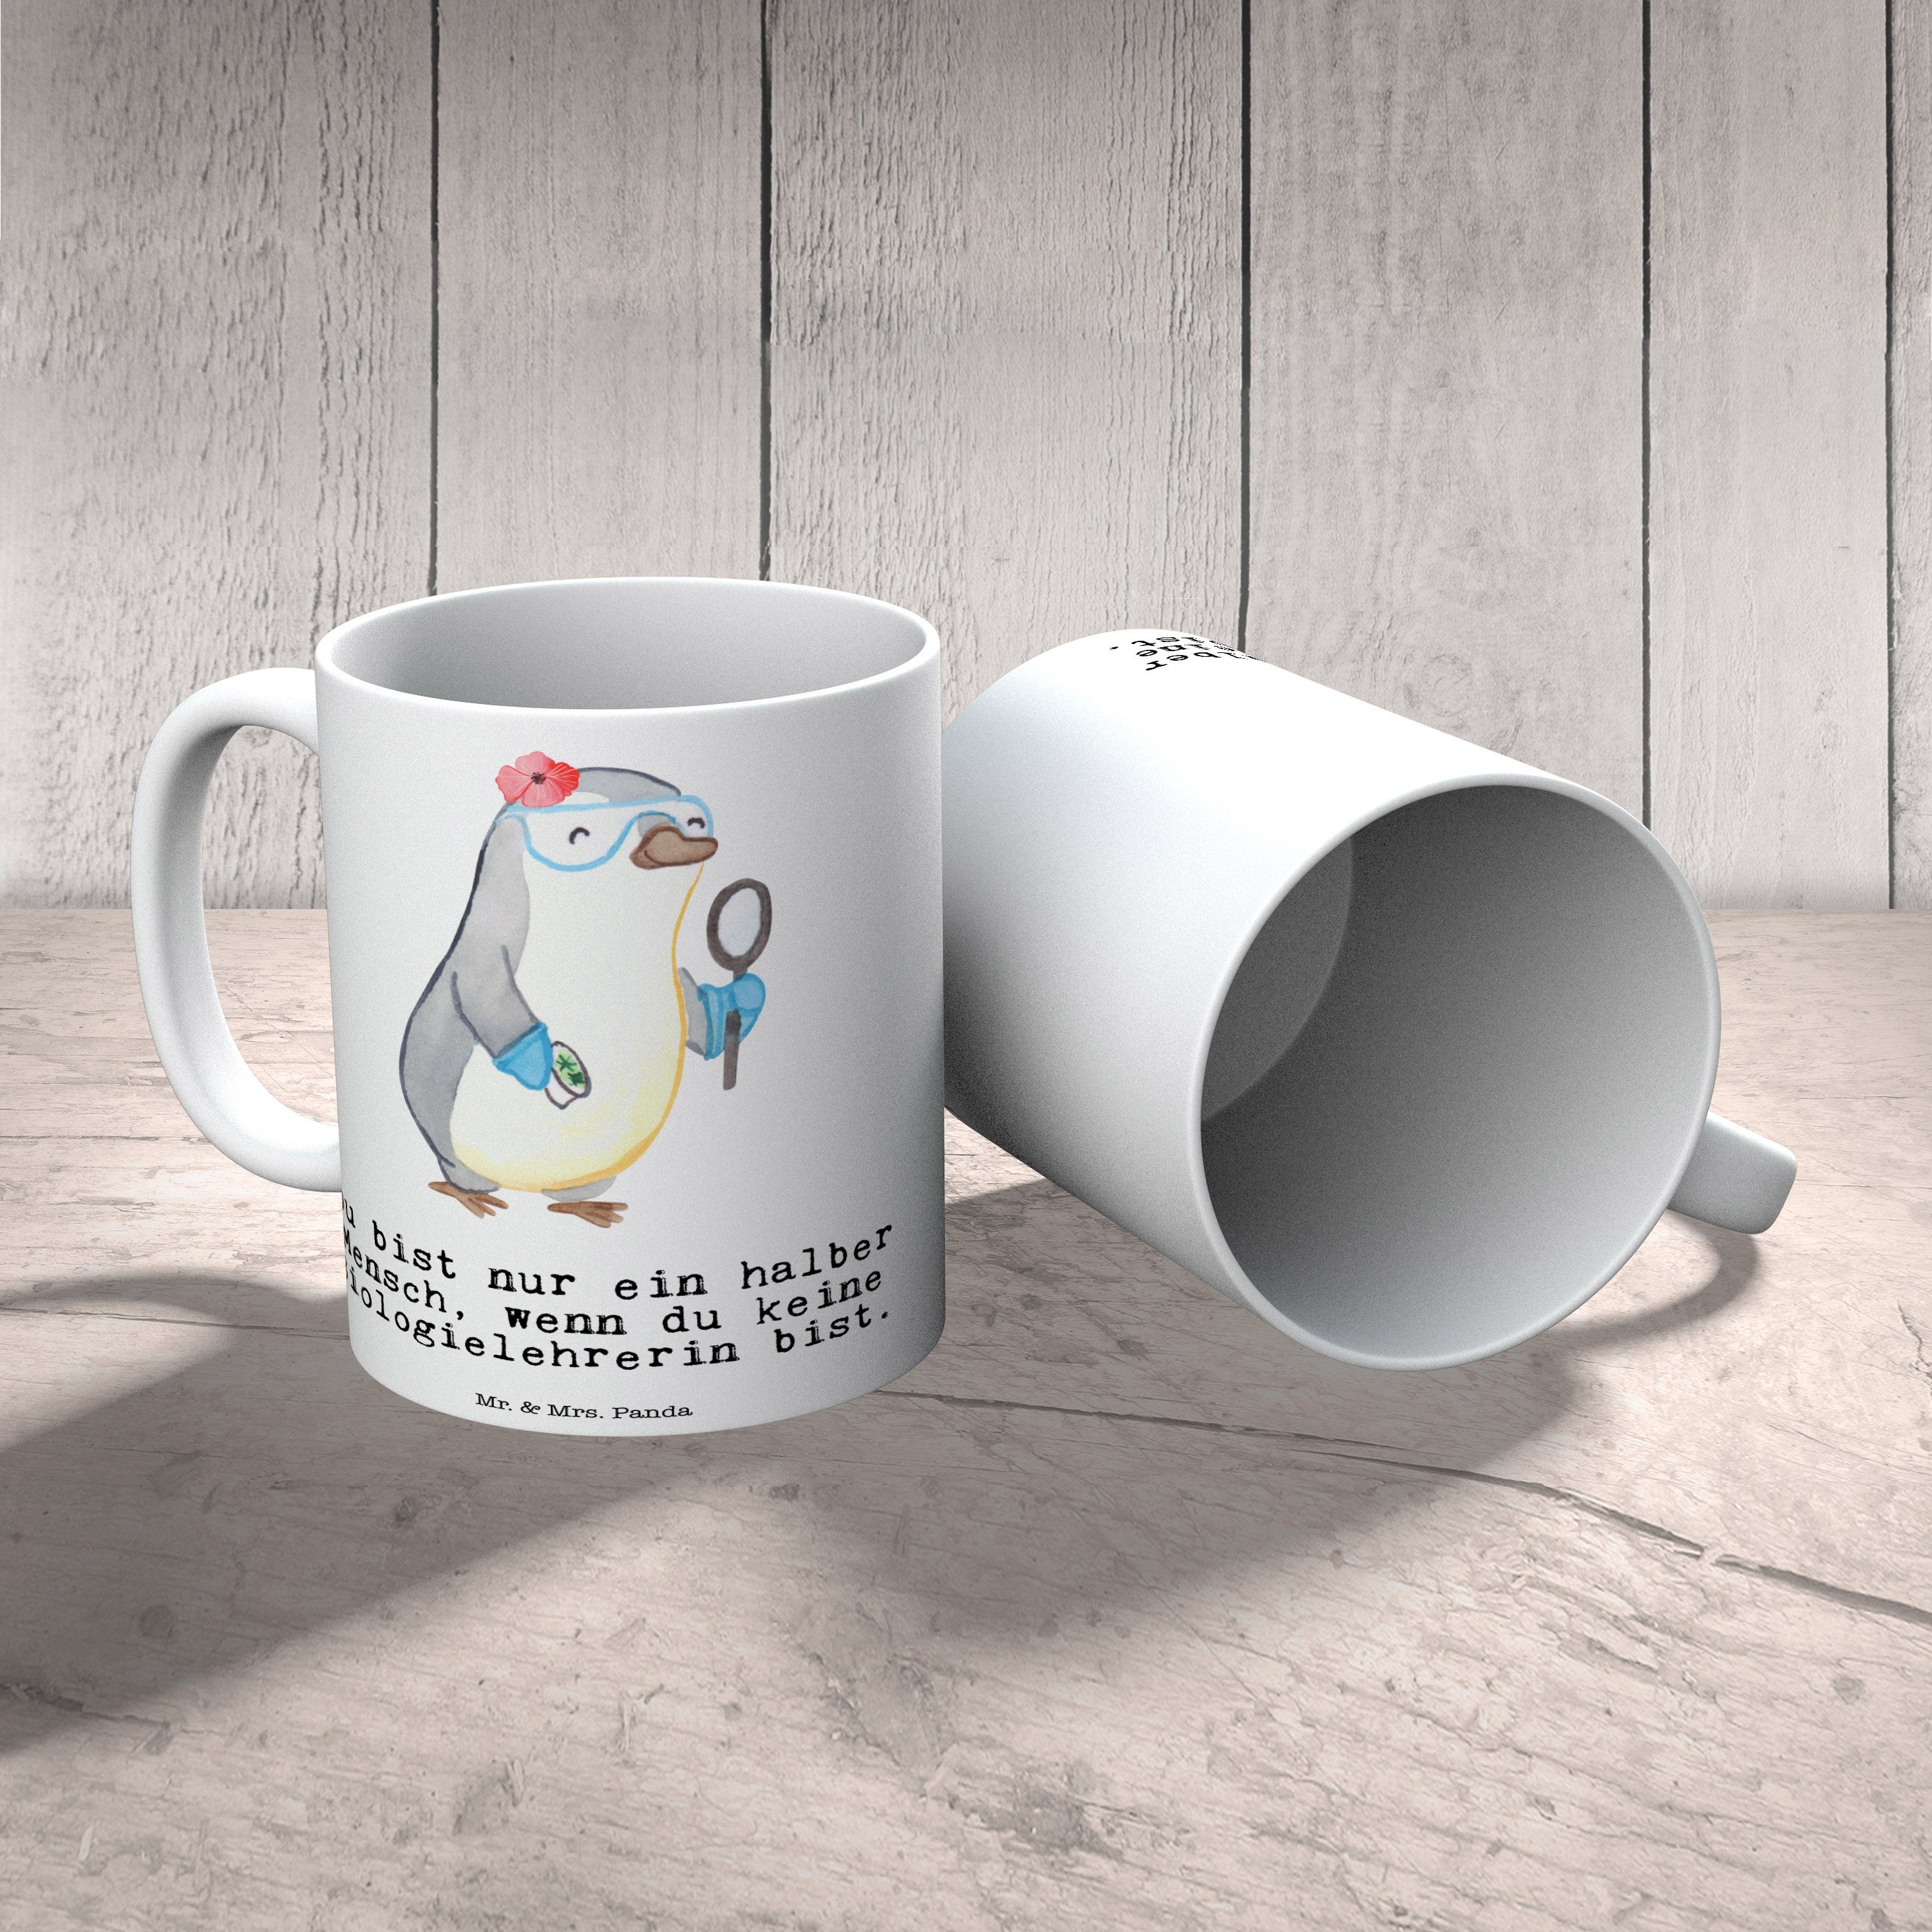 Mr. & Mrs. Panda Tasse Porzellantasse, - Geschenk, Weiß - Keramik Herz Teetasse, mit Biologielehrerin